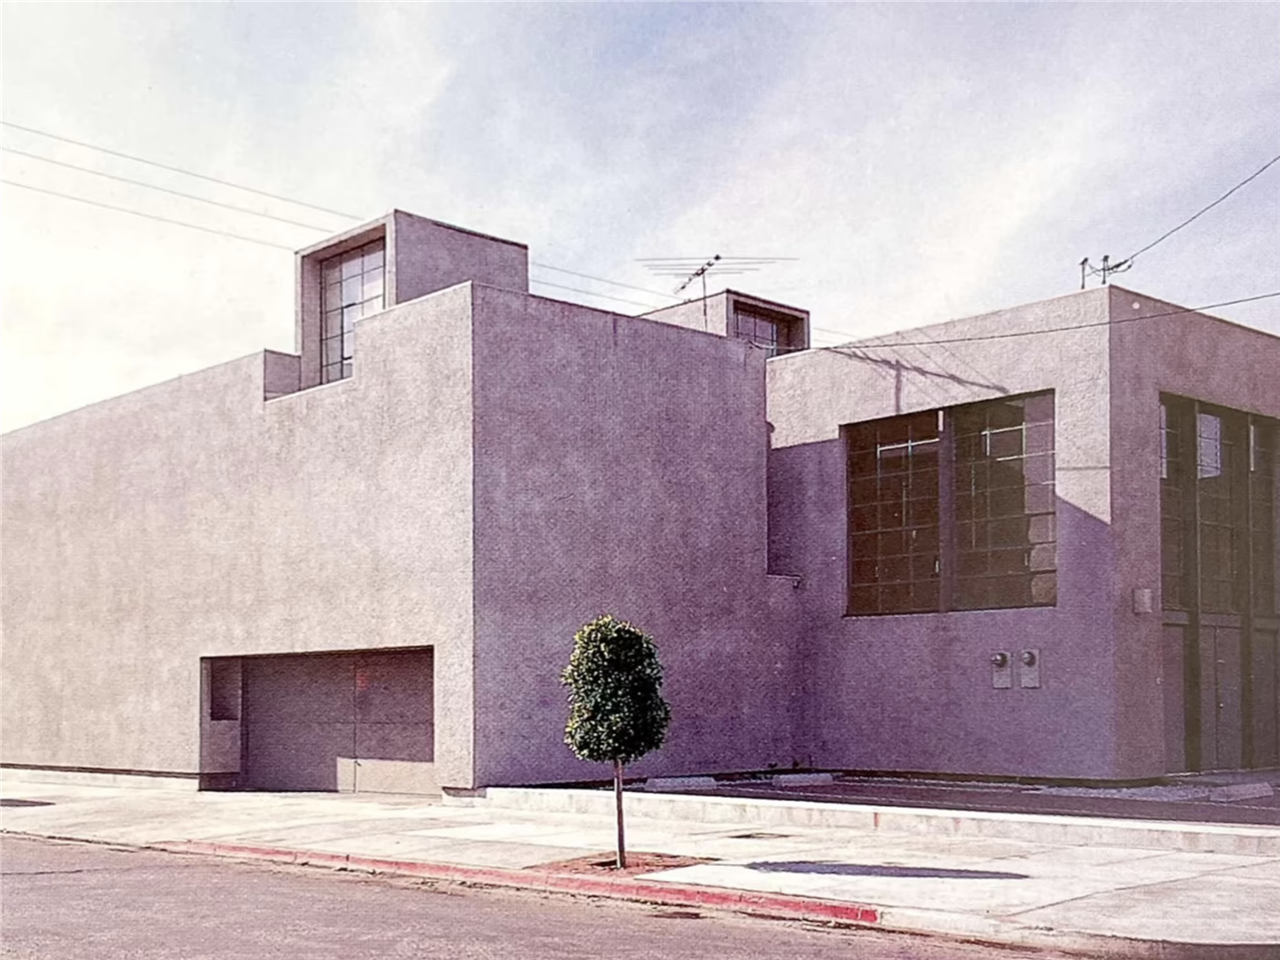 Sin pretenderlo, a Frank Gehry le salió en su día una fachada muy brutalista, la cual permanece intacta en el número 7.001 de Melrose Avenue en Hollywood, California.